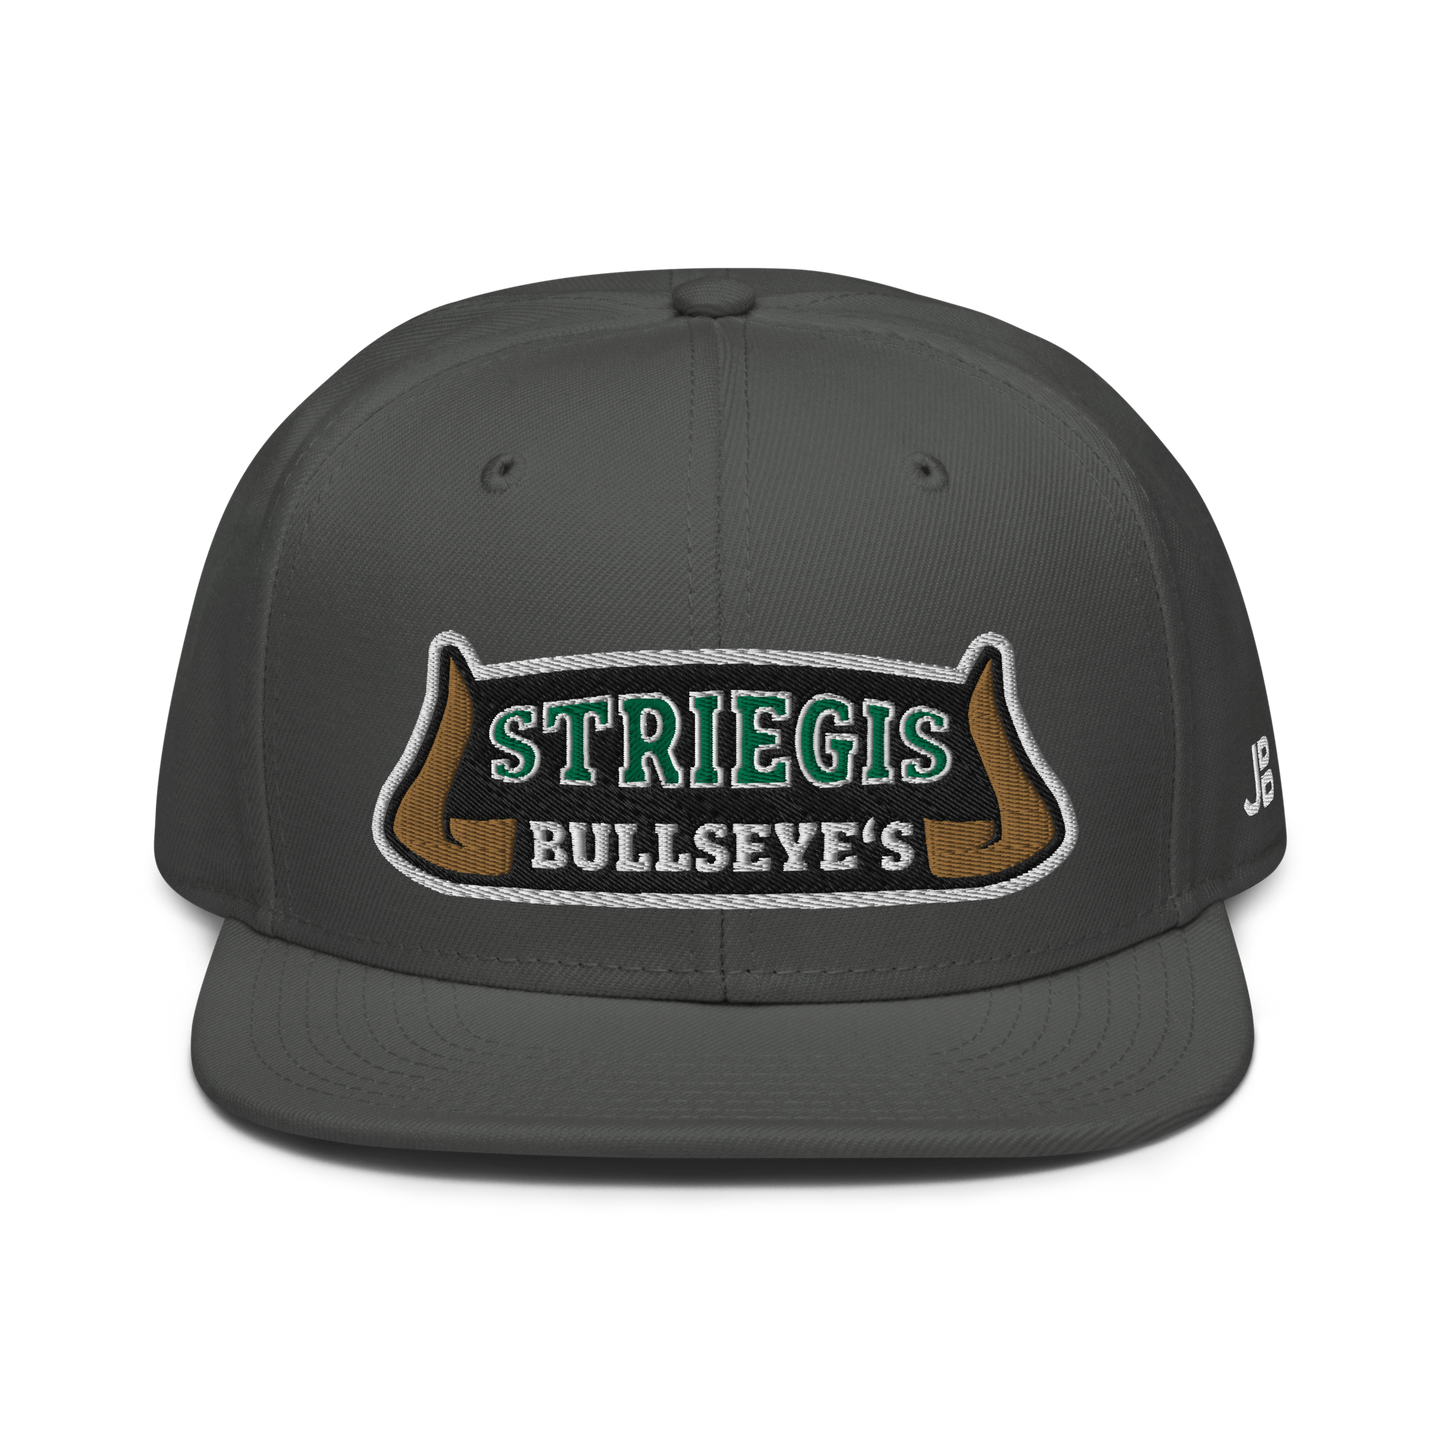 STRIEGIS BULLSEYES - Snapback Cap